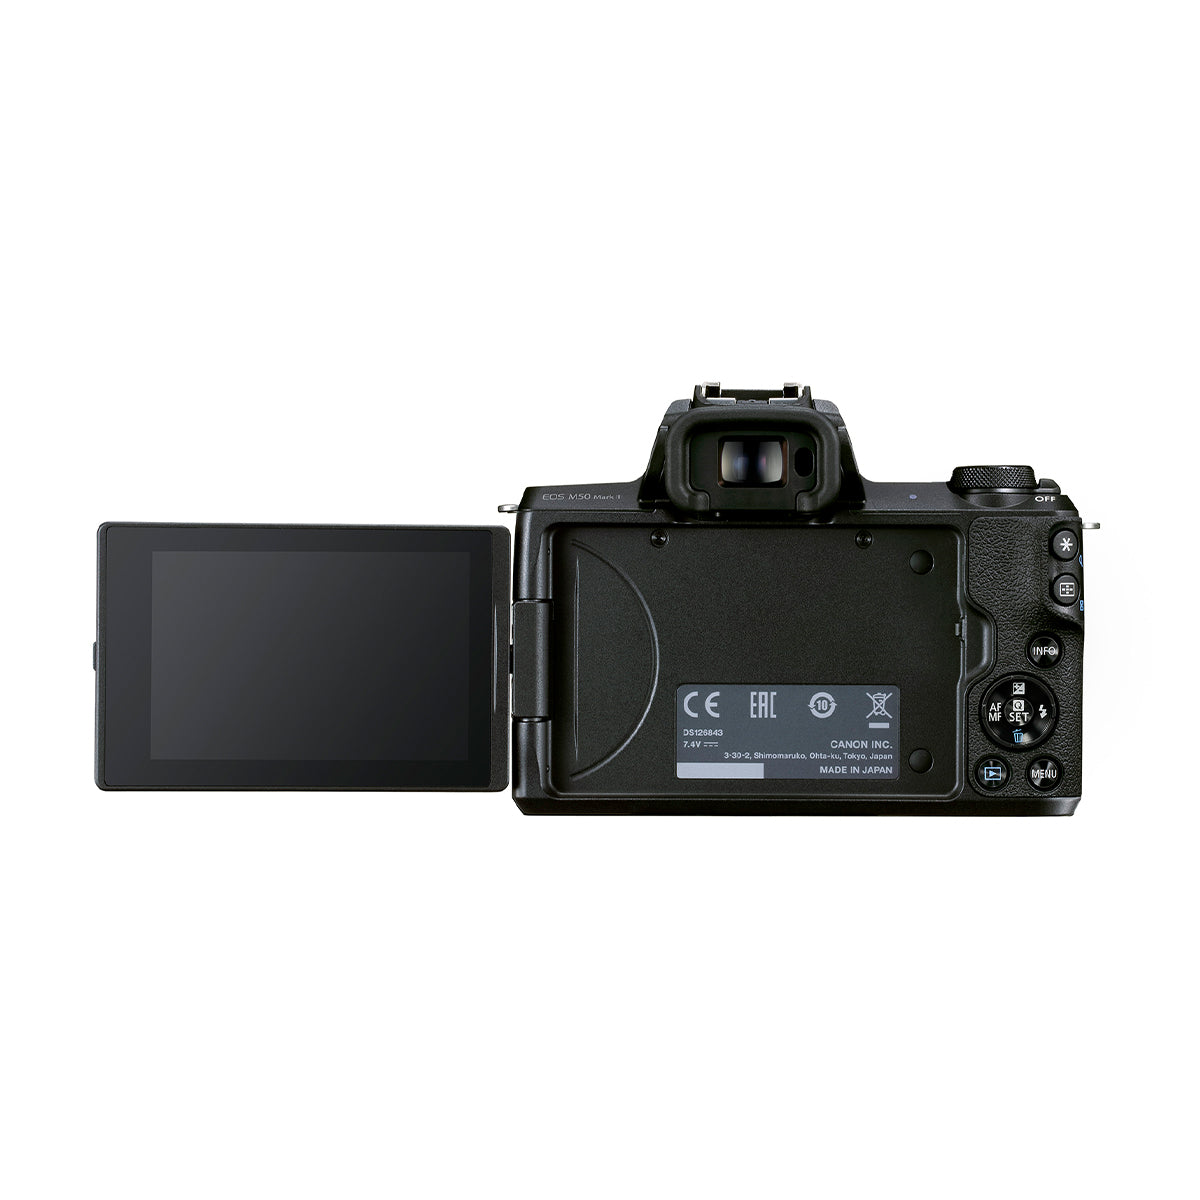 Canon EOS M50 Mark II with EF-M 15-45mm IS STM & EF-M 55-200 IS STM Lens Kit